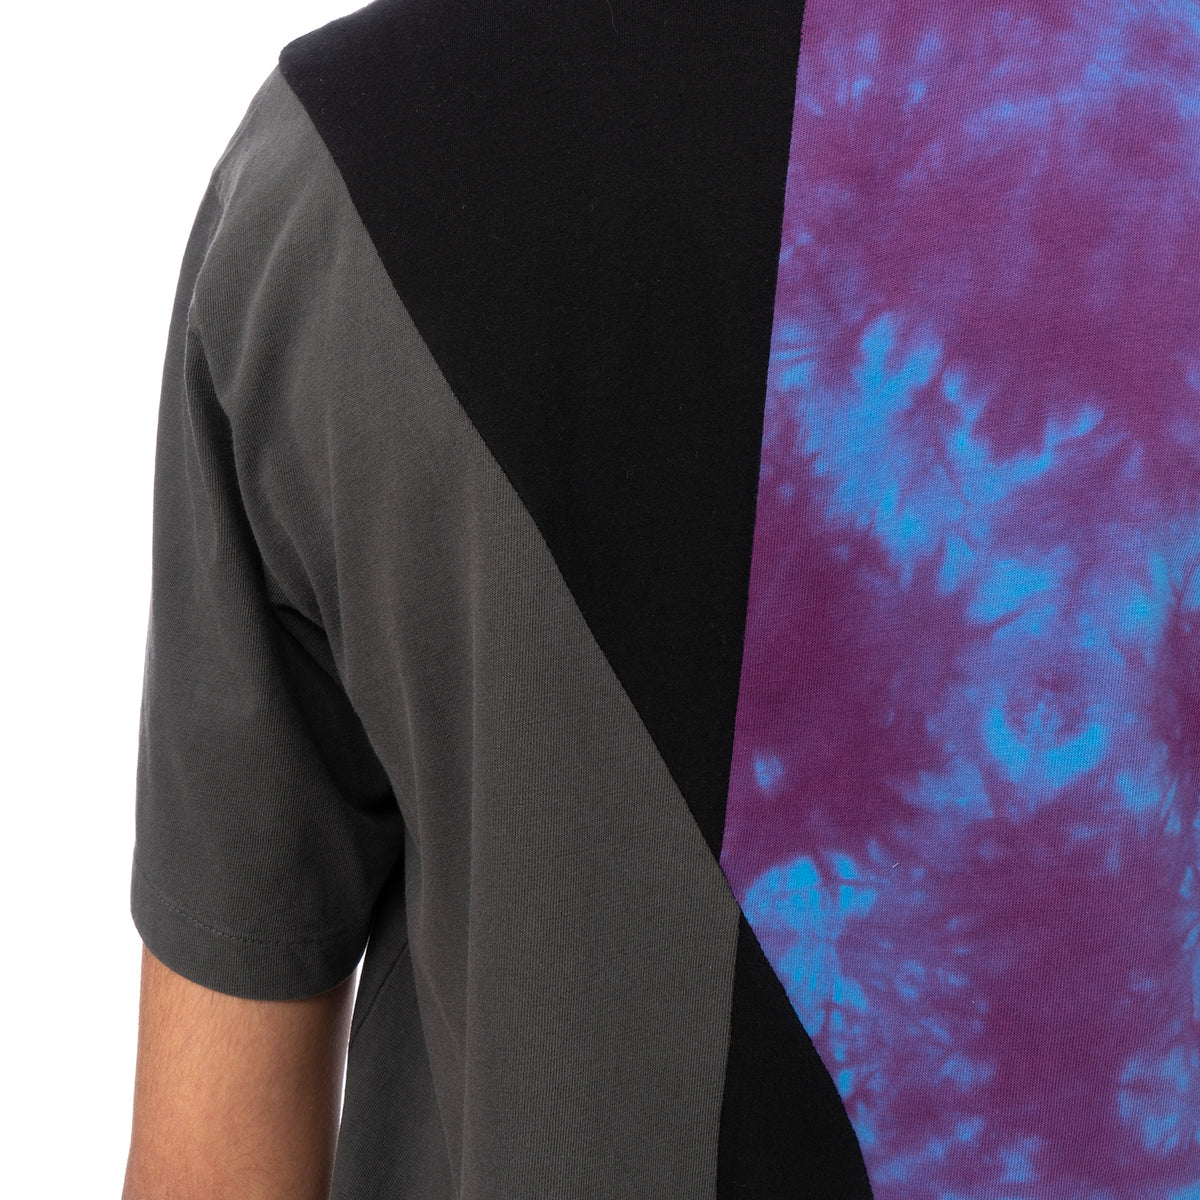 Duran Lantink for Concrete | T-Shirt-1 Purple / Black-Grey - Concrete